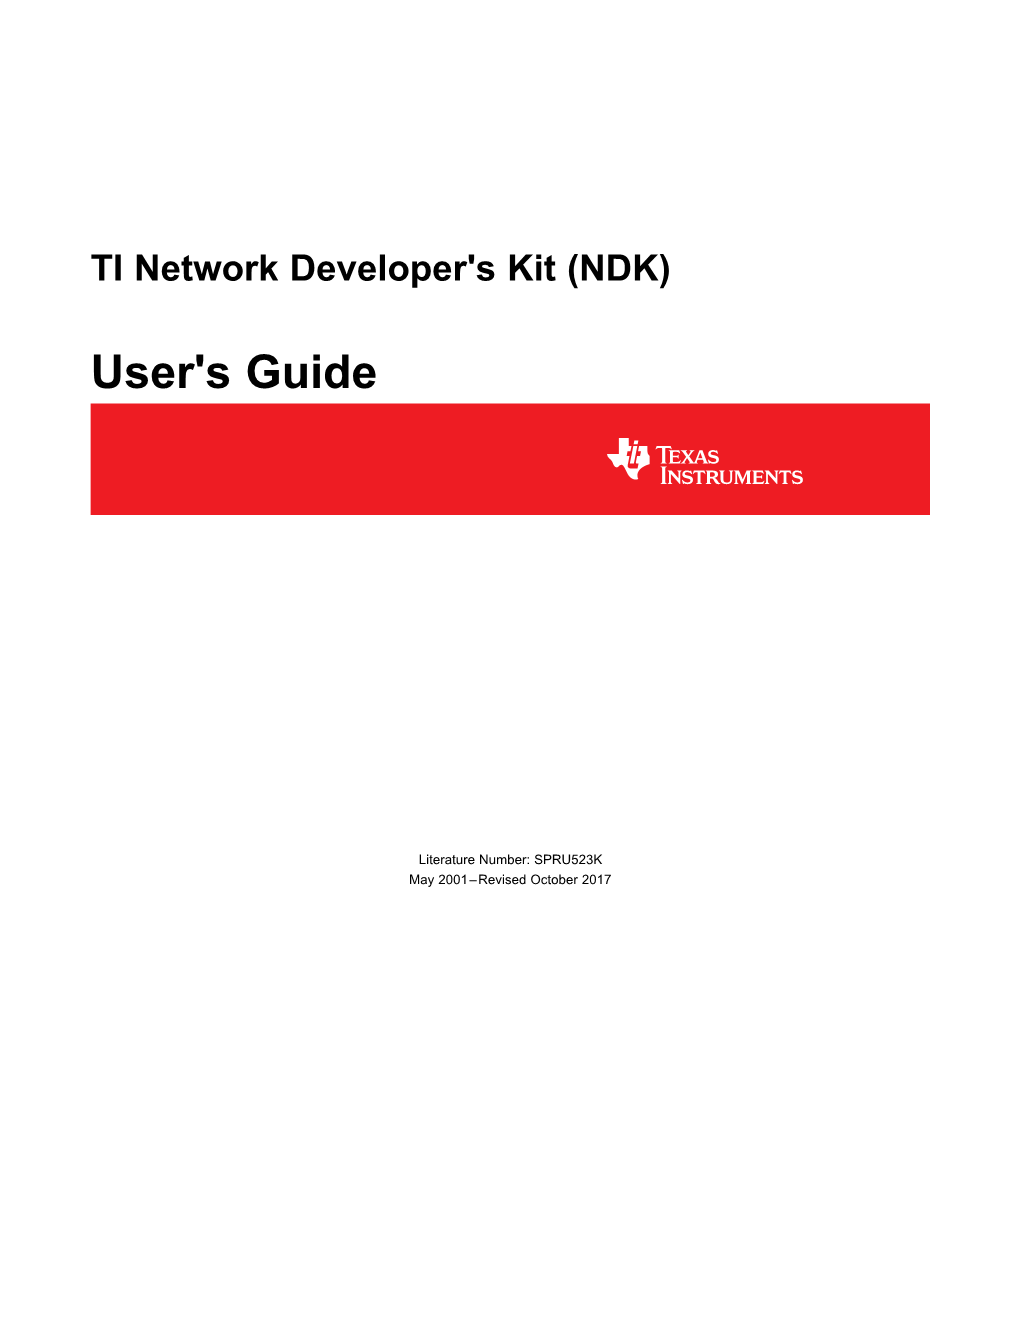 TI Network Developer's Kit (NDK) User's Guide (Rev. K)